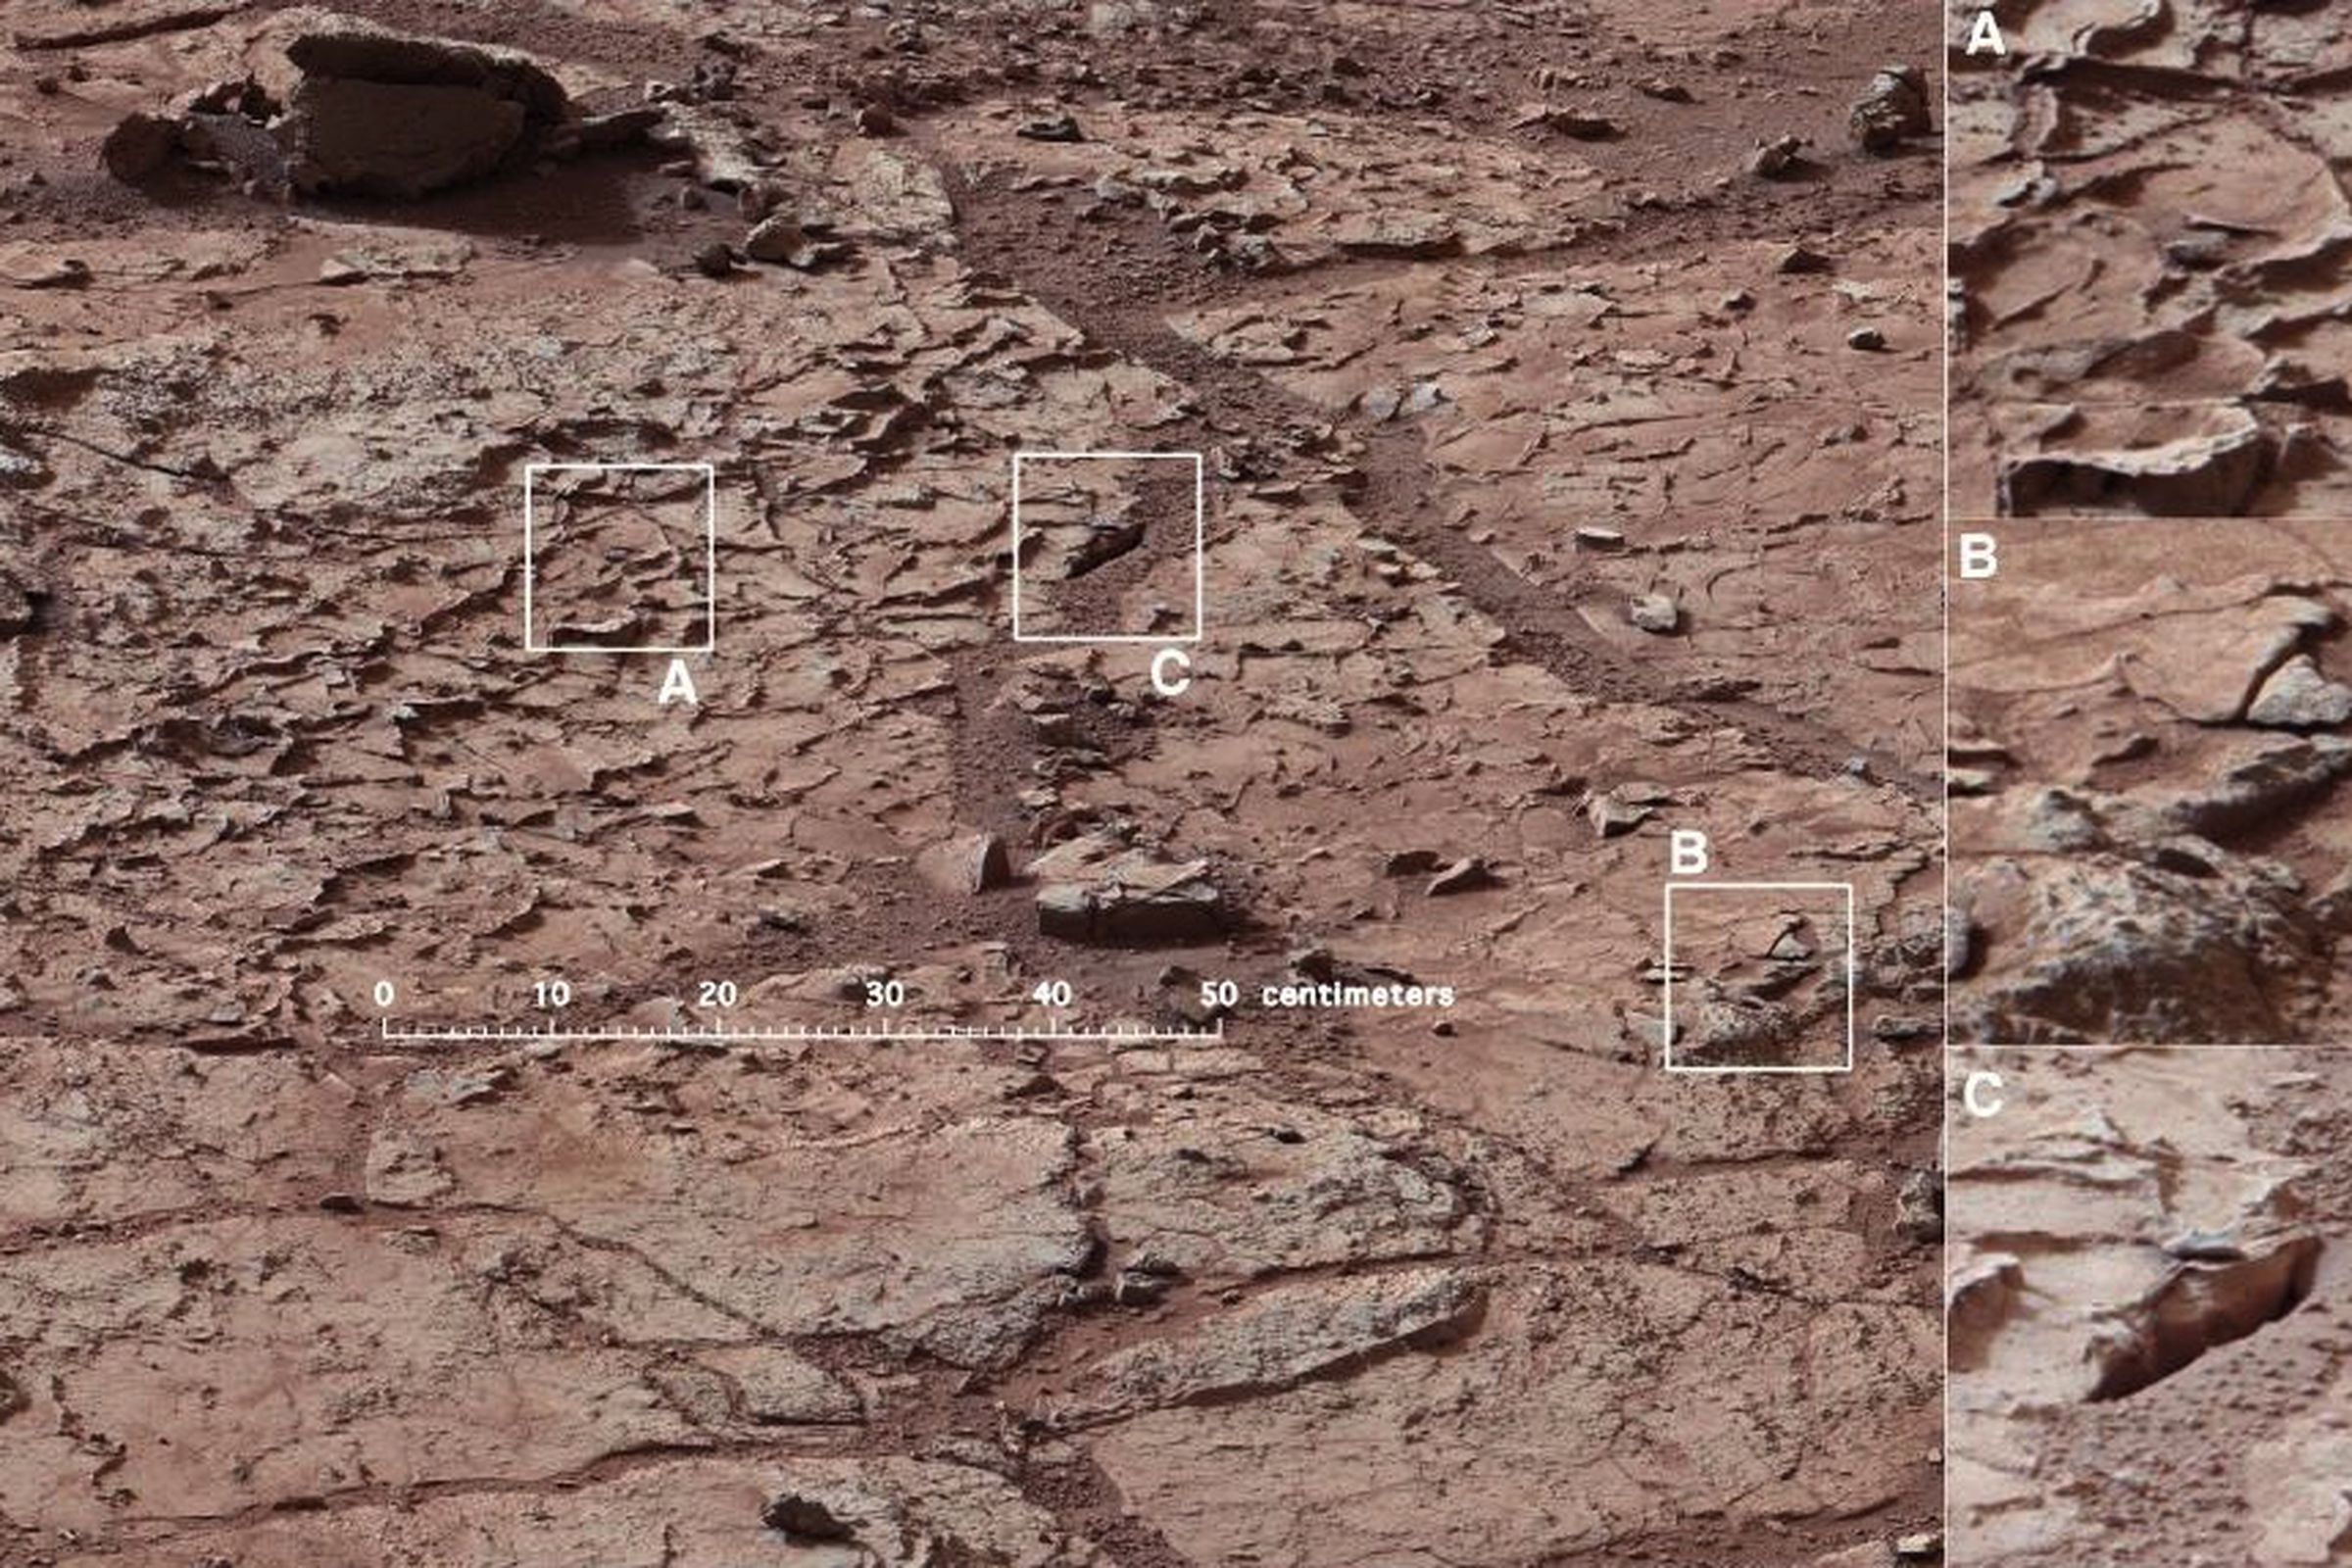 Mars Curiosity drilling site